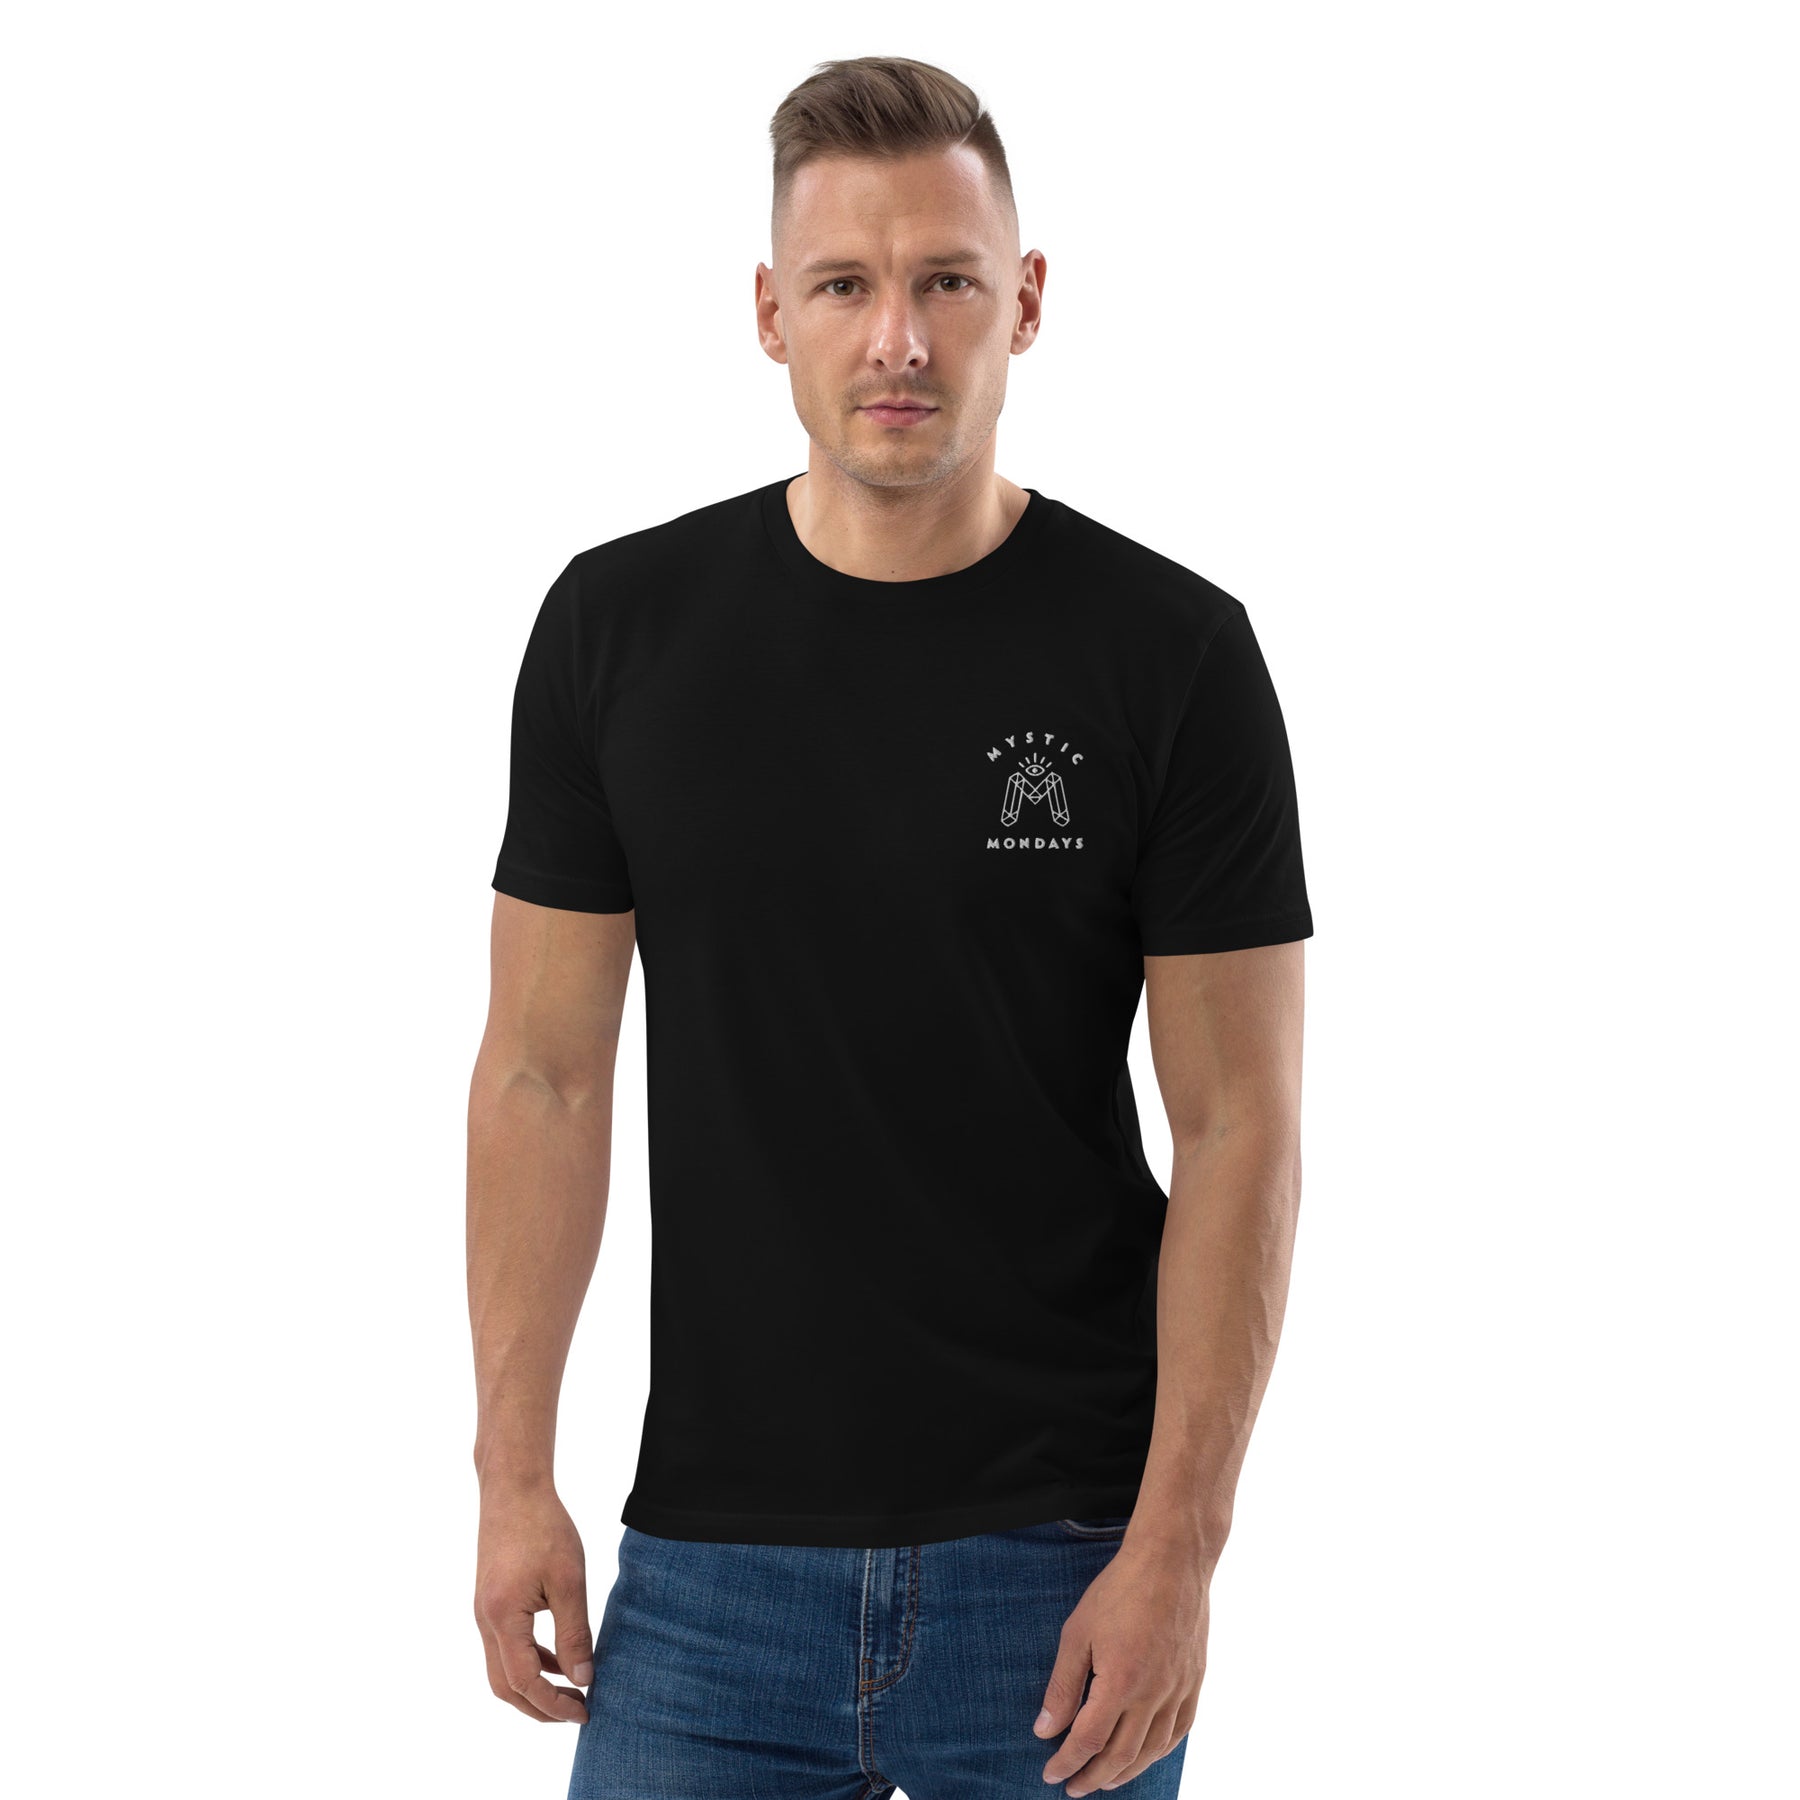 Libra Symbol T-shirt